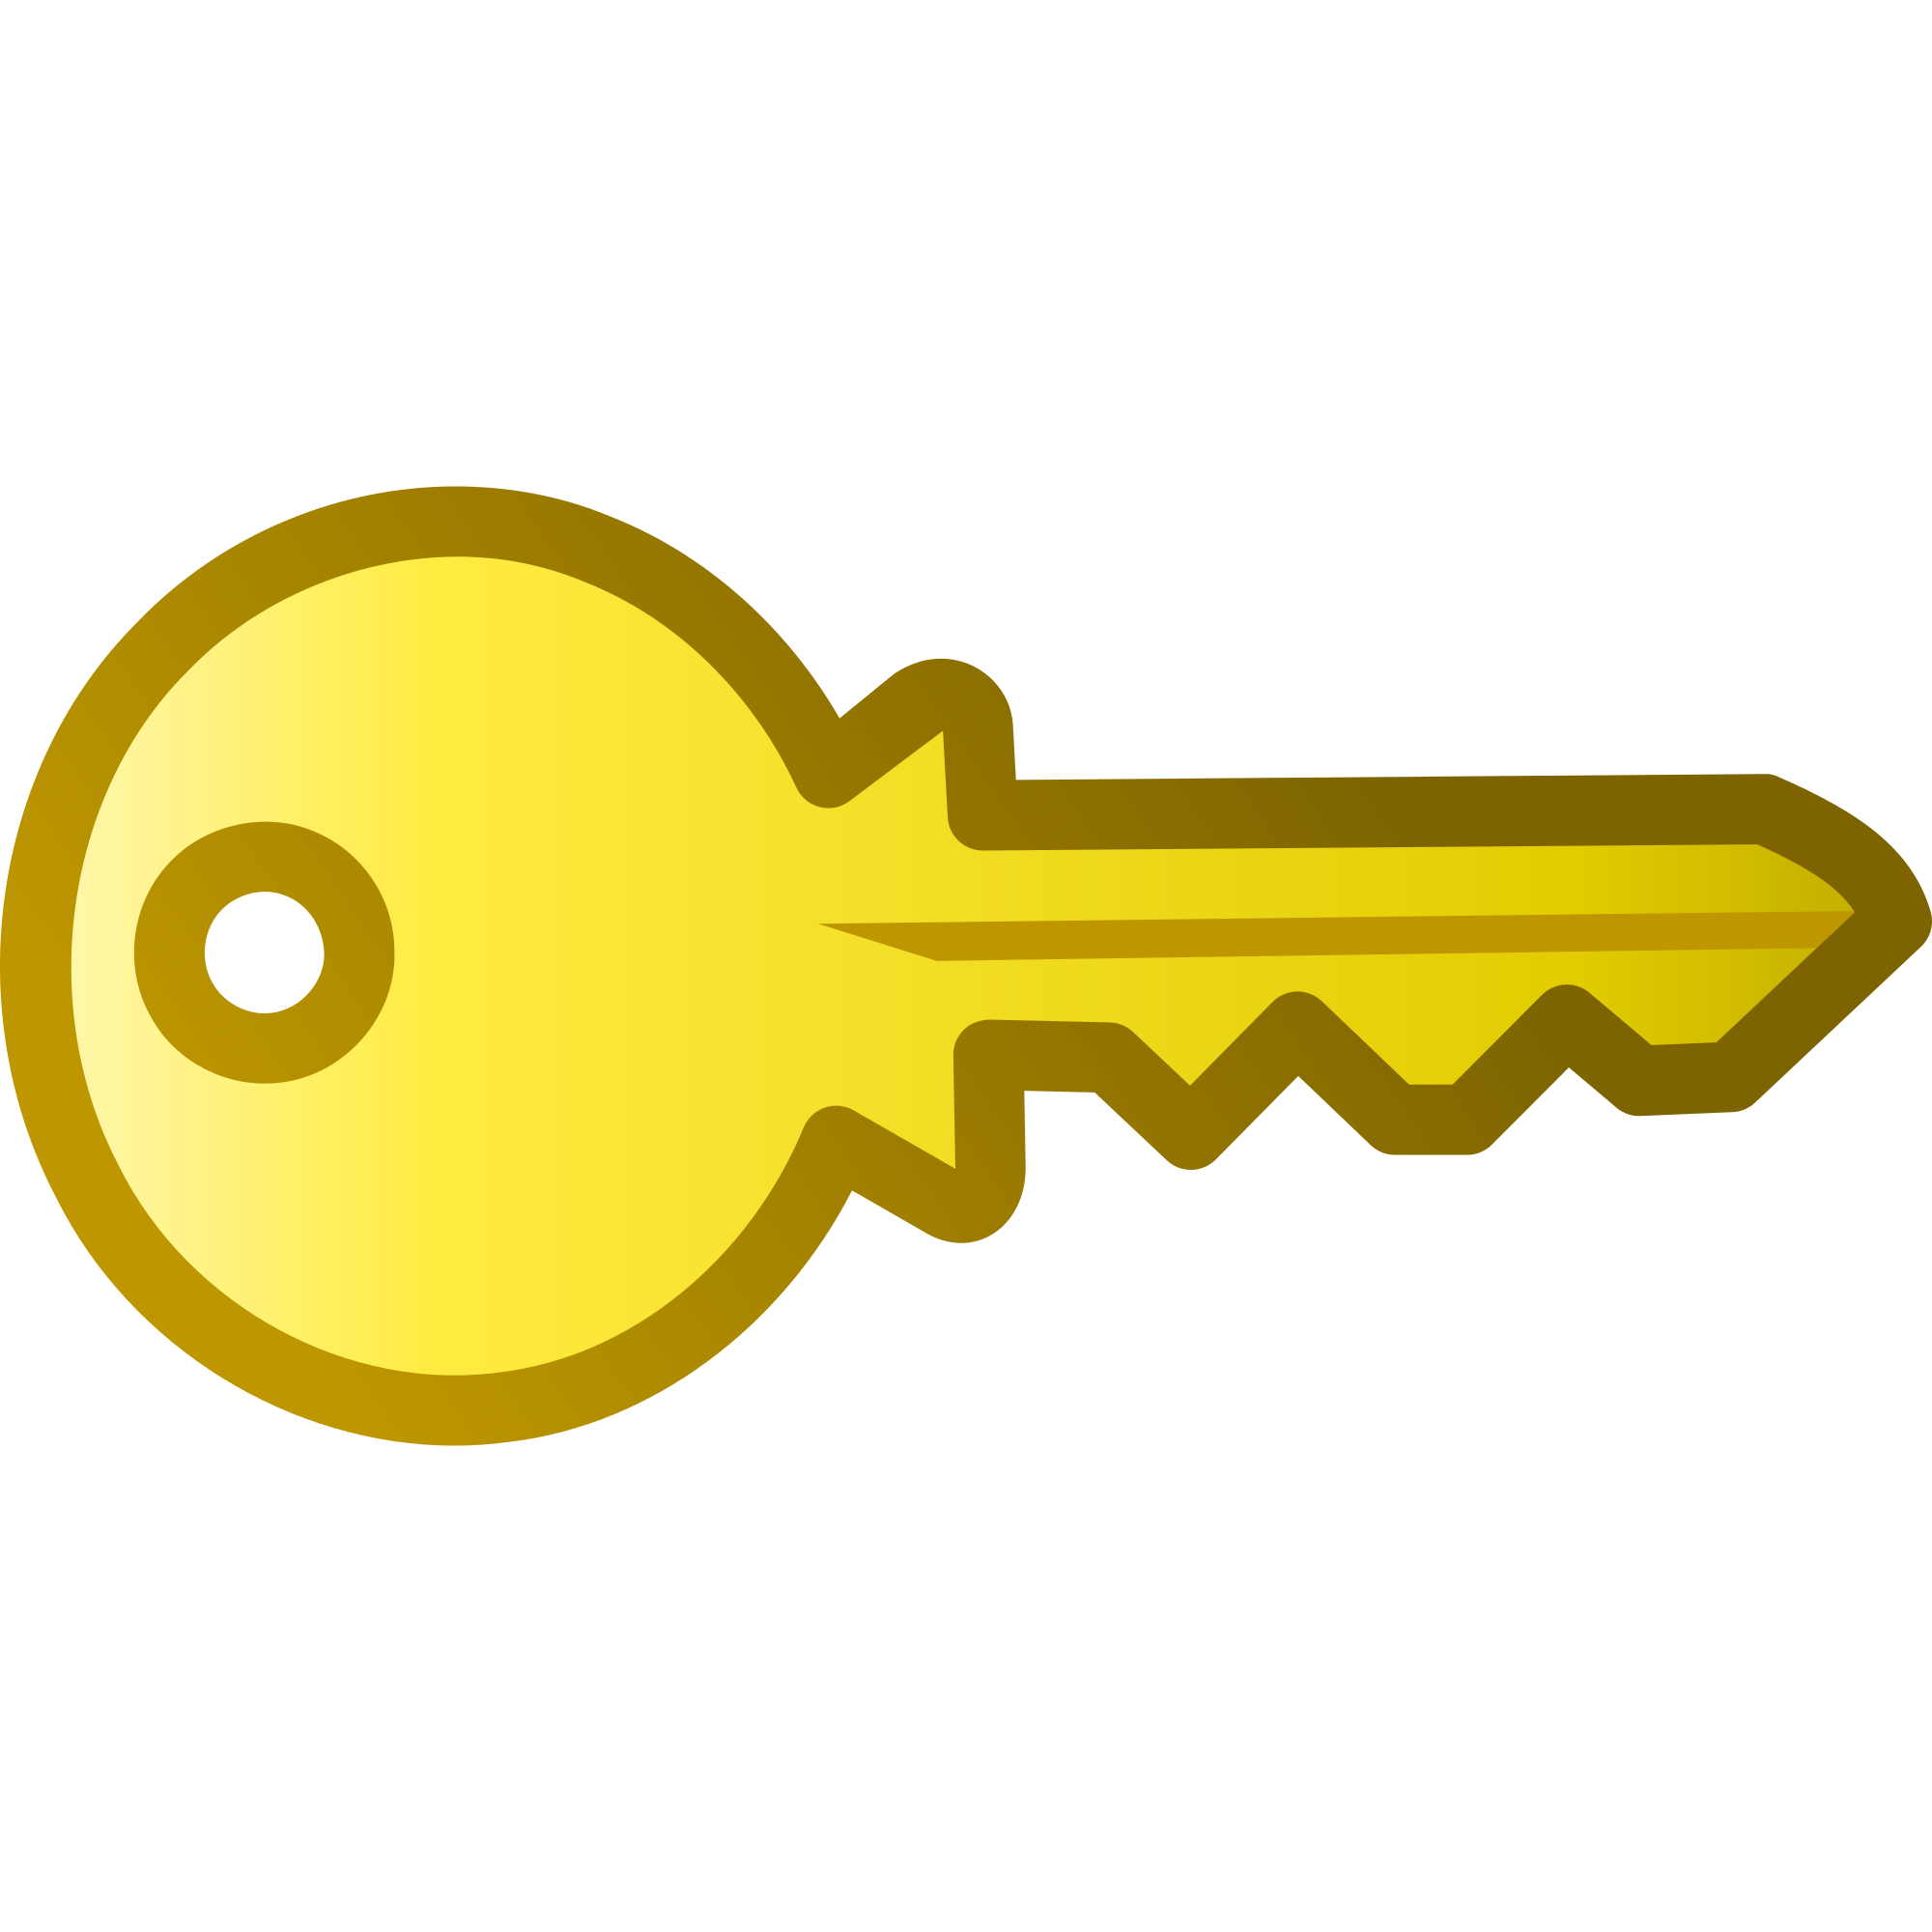 Keys picture. Ключ. Изображение ключа. Ключ иконка. Ключ рисунок.